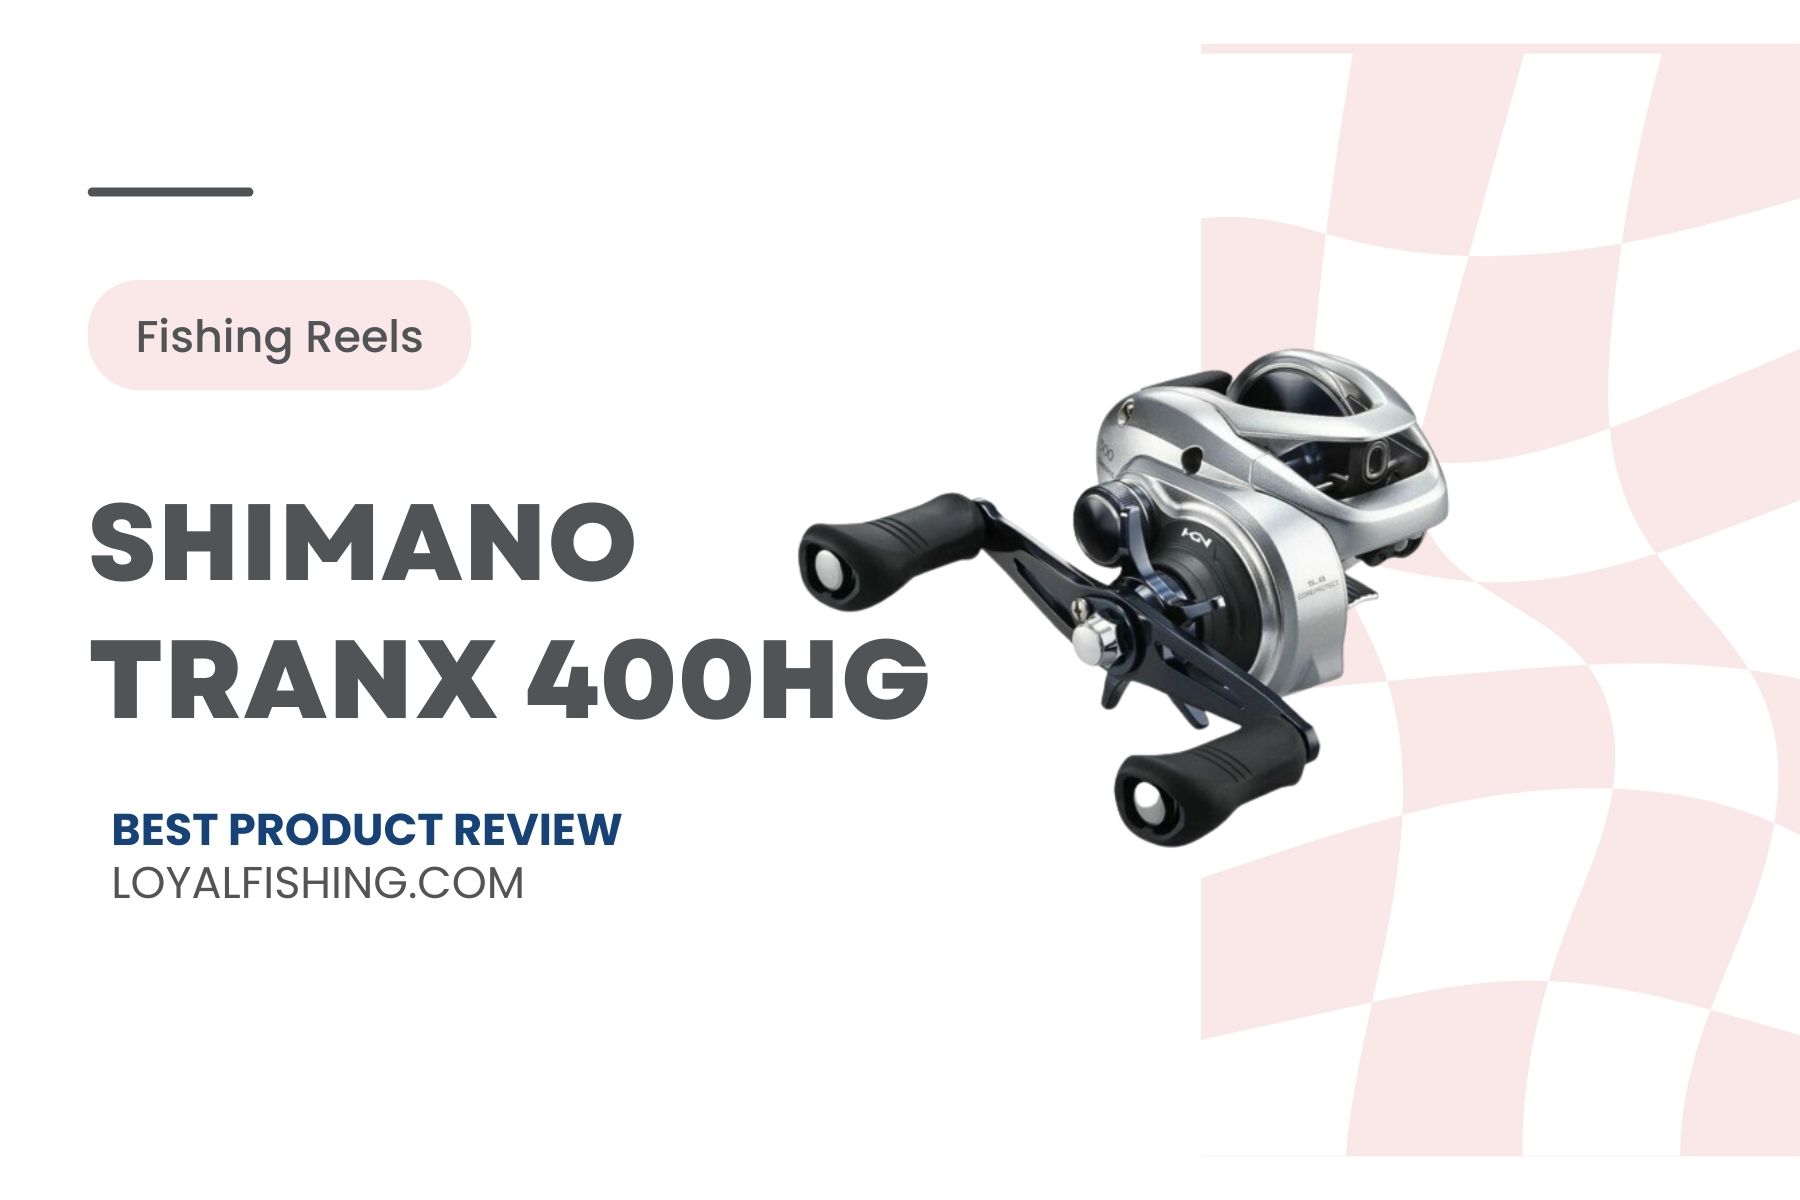 Shimano Tranx 400HG - Review Post